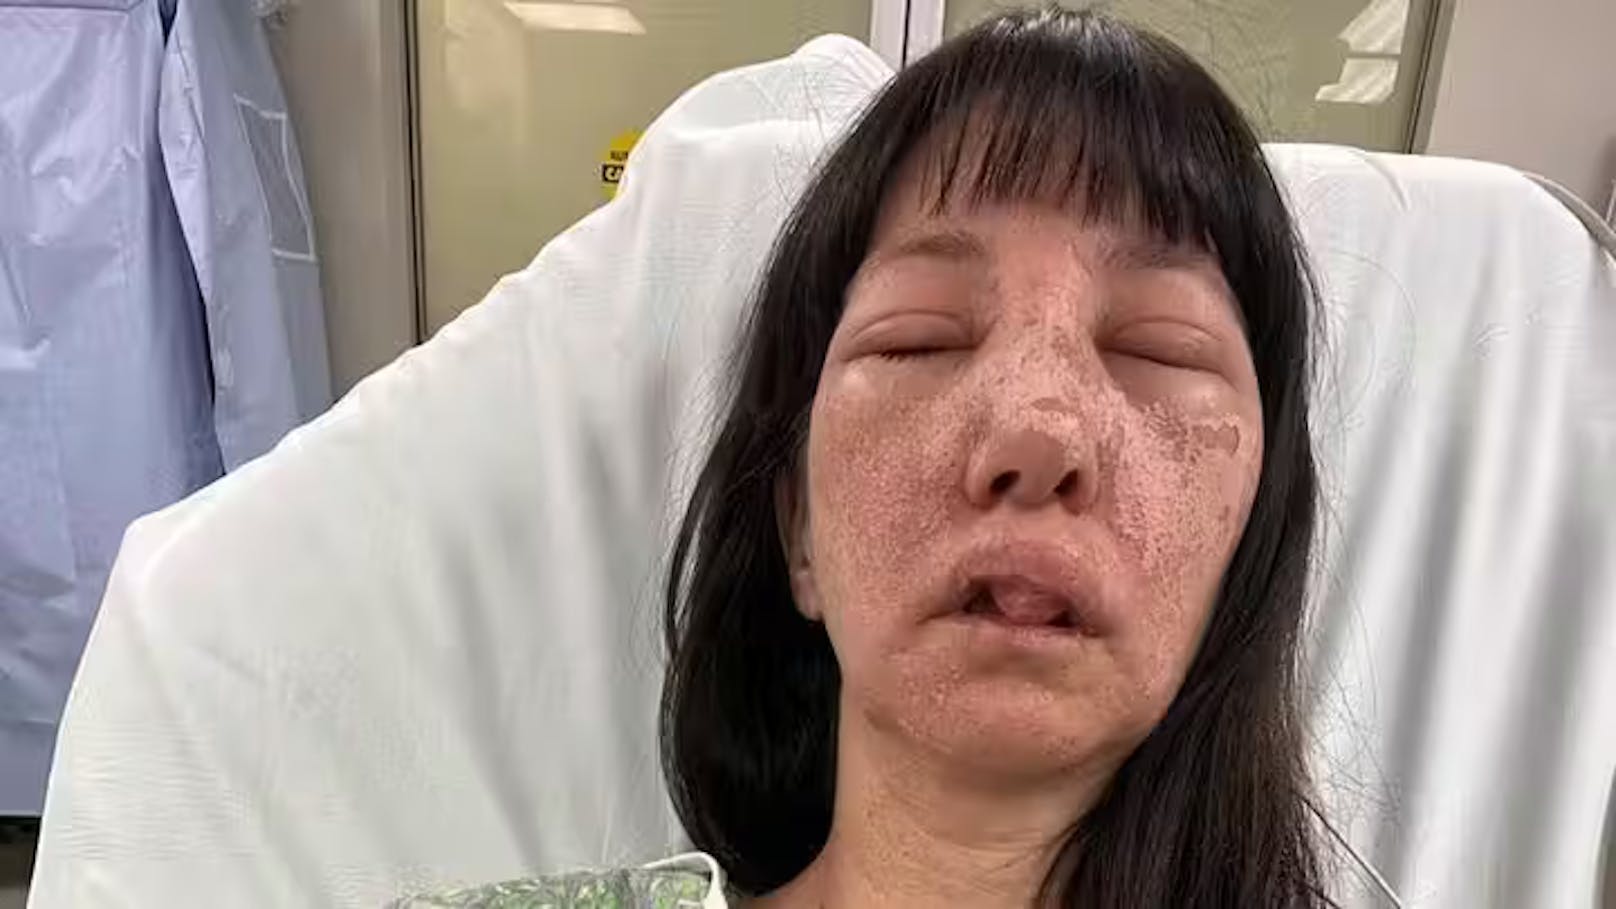 Spinnen beißen Jessica (44) ins Gesicht: "Haut brannte"